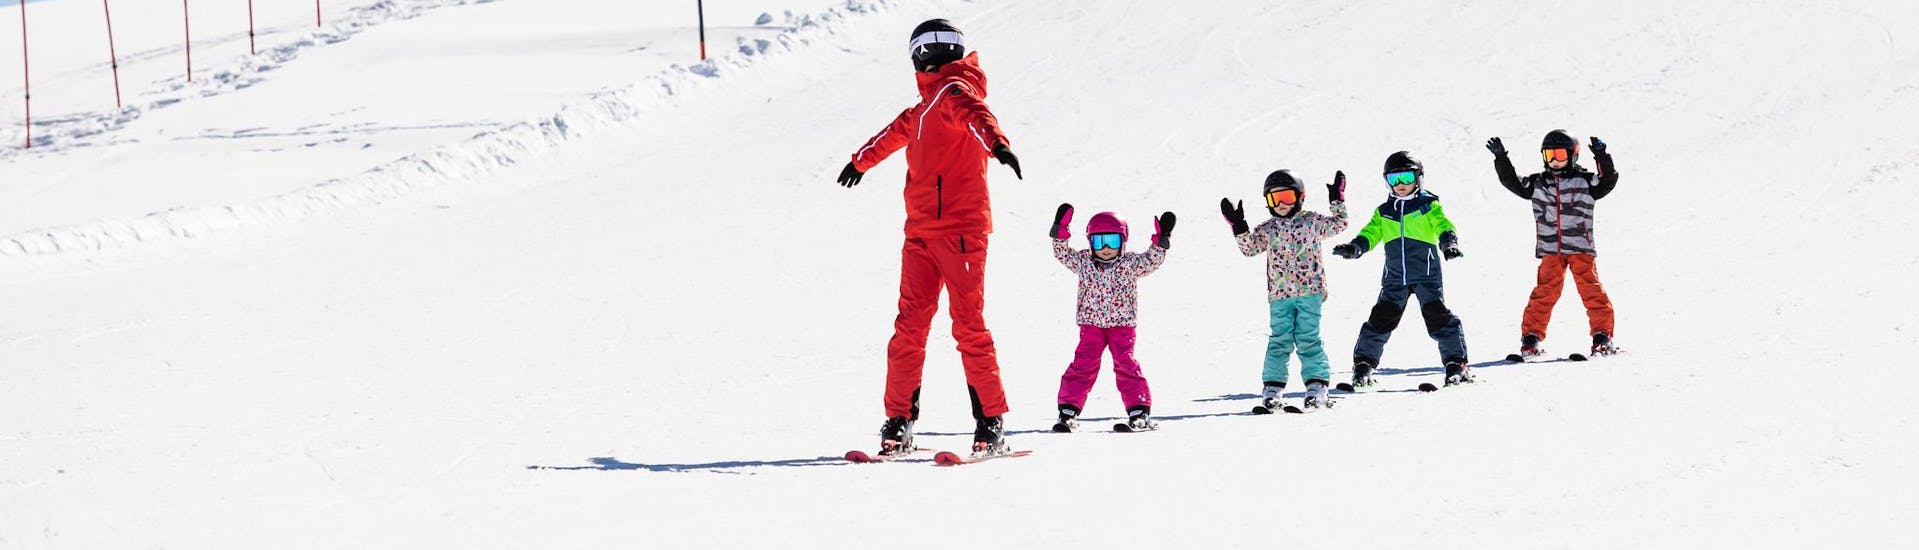 Skilehrer und Kinder fahren während eines Skikurses die Pisten hinunter.